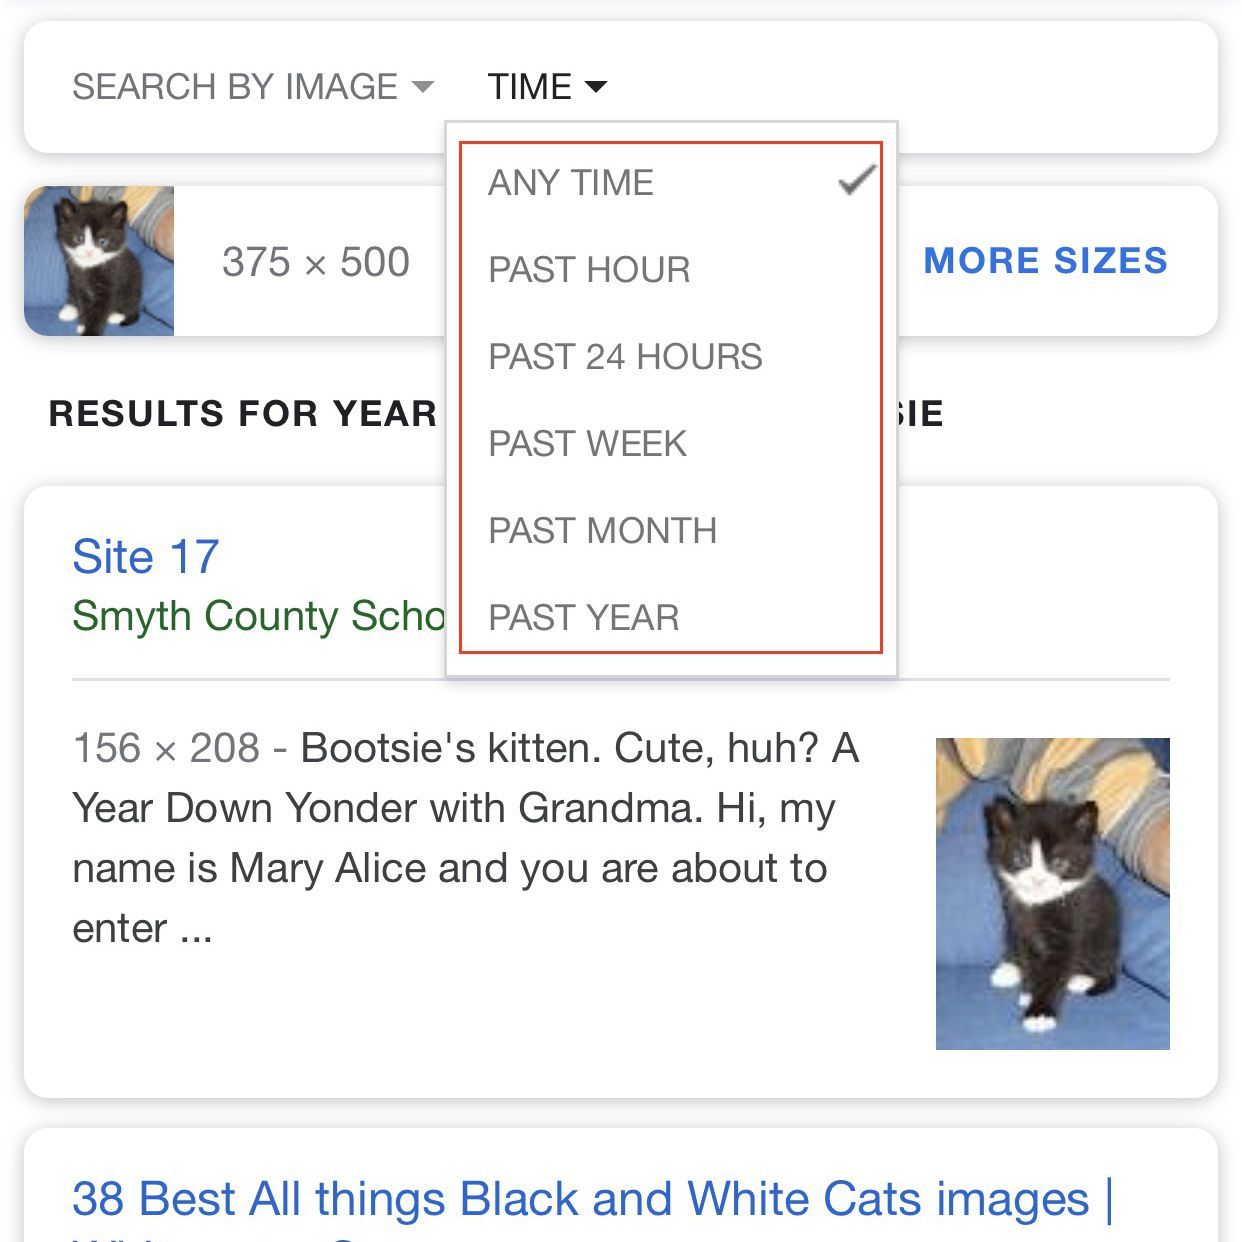 Снимок экрана с результатами поиска картинок Google с выделенными параметрами времени.